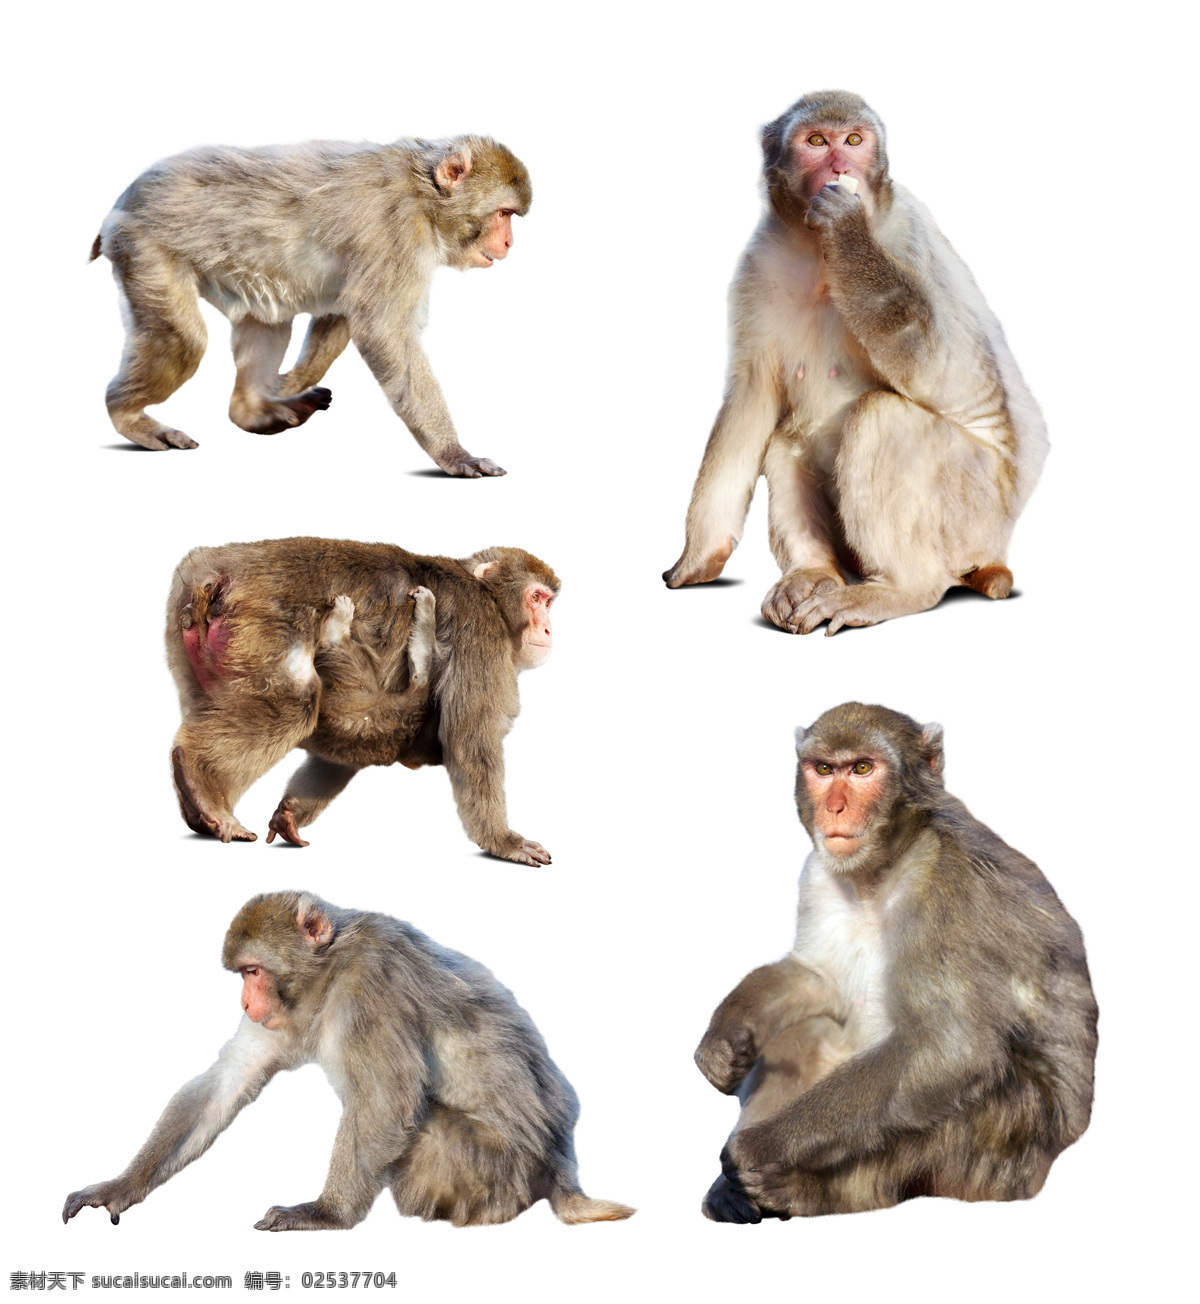 猴子 动物摄影 动物世界 野生动物 陆地动物 生物世界